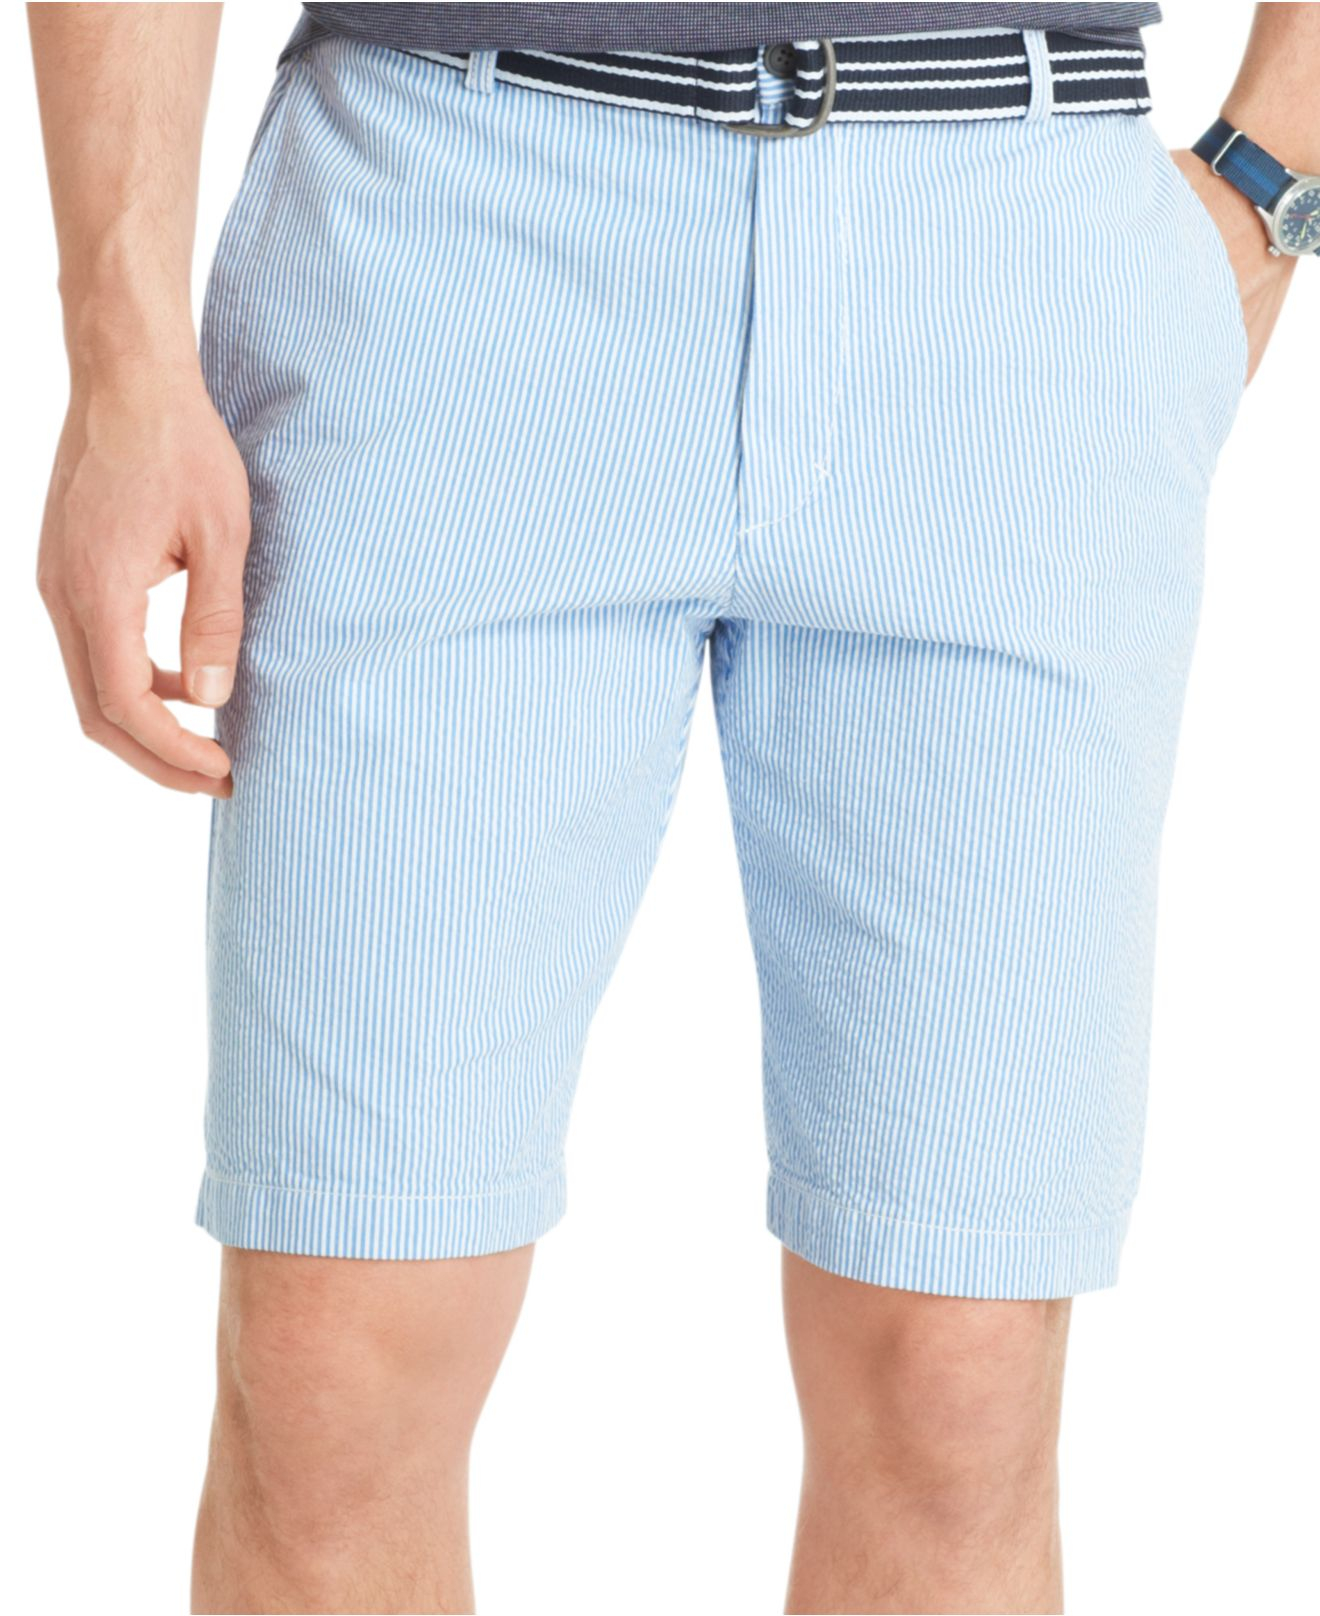 Izod Striped Seersucker Shorts in Blue for Men - Lyst